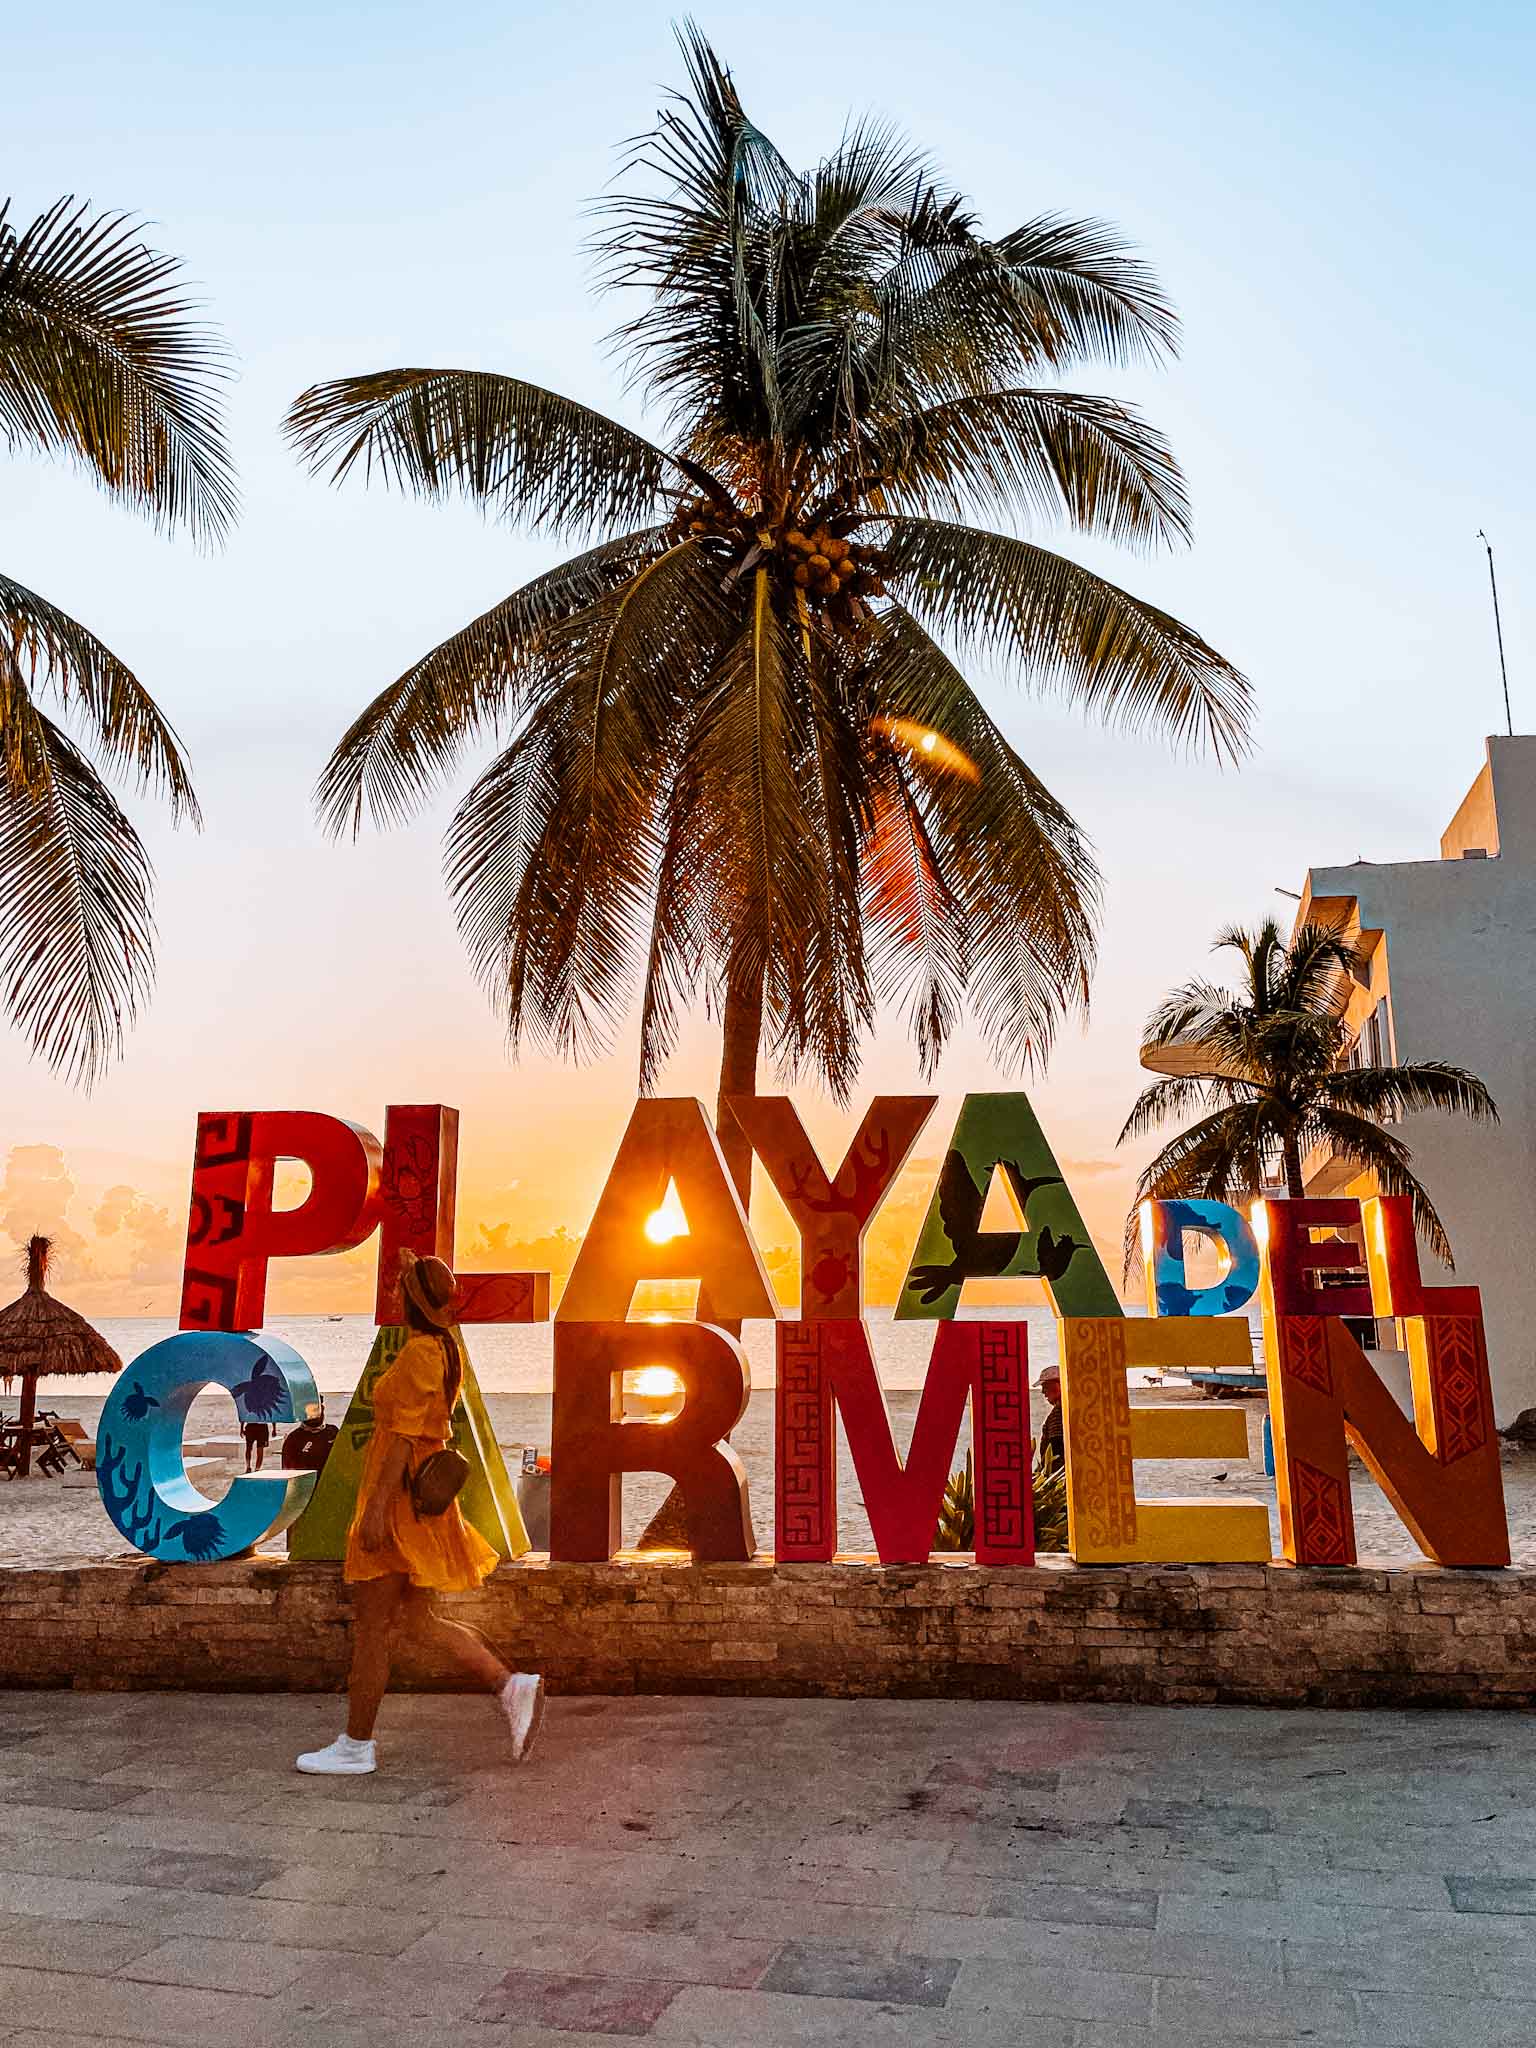 Best Instagram spots in Playa del Carmen Mexico